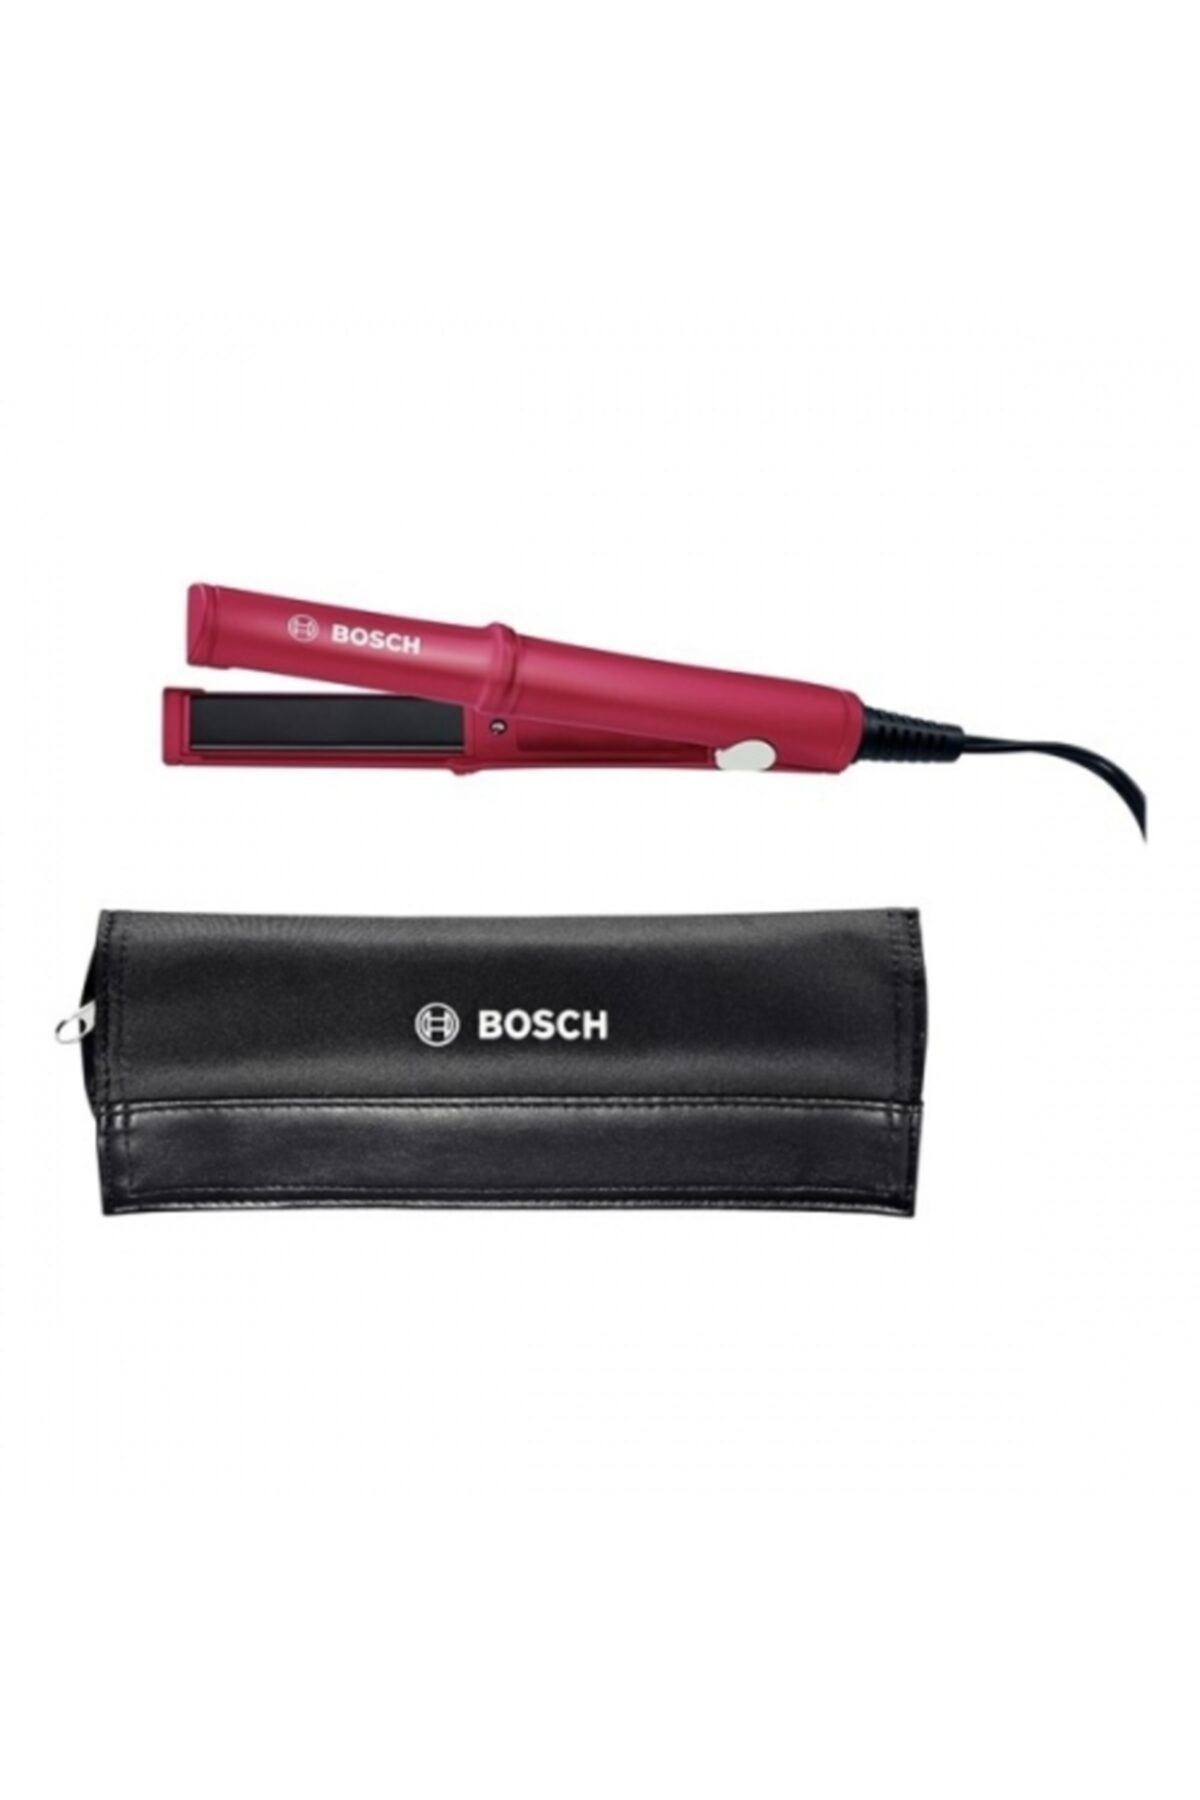 Bosch Phs3651 Saç Düzleştirici